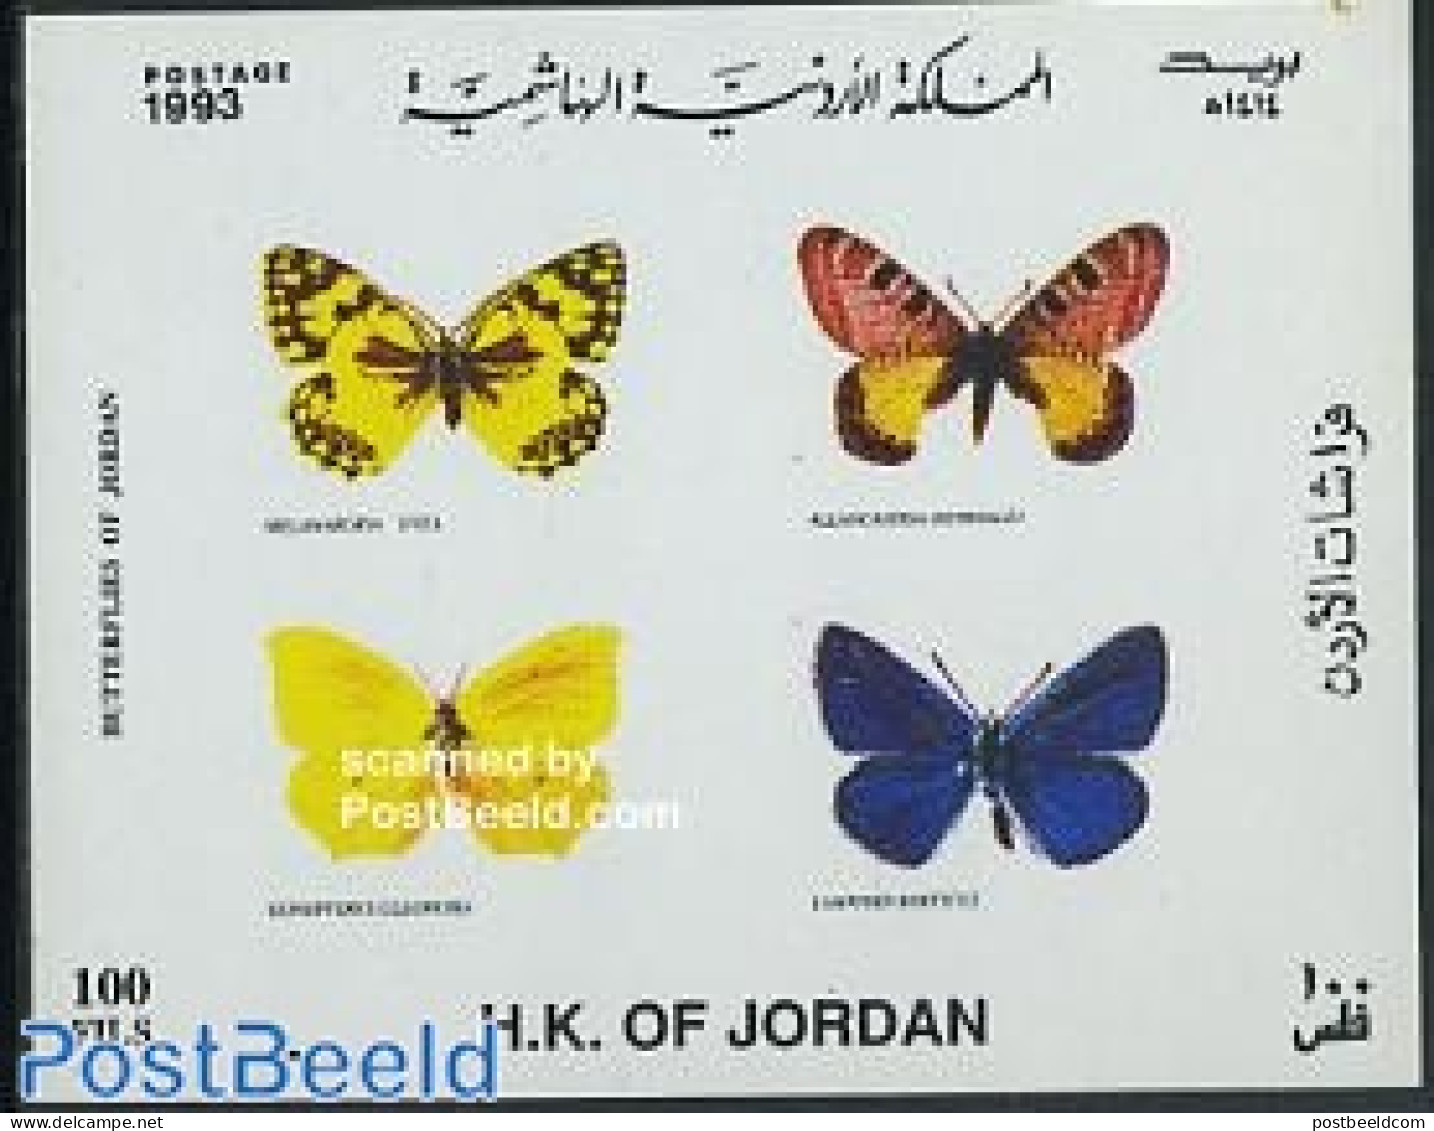 Jordan 1993 Butterflies S/s, Mint NH, Nature - Butterflies - Jordanien